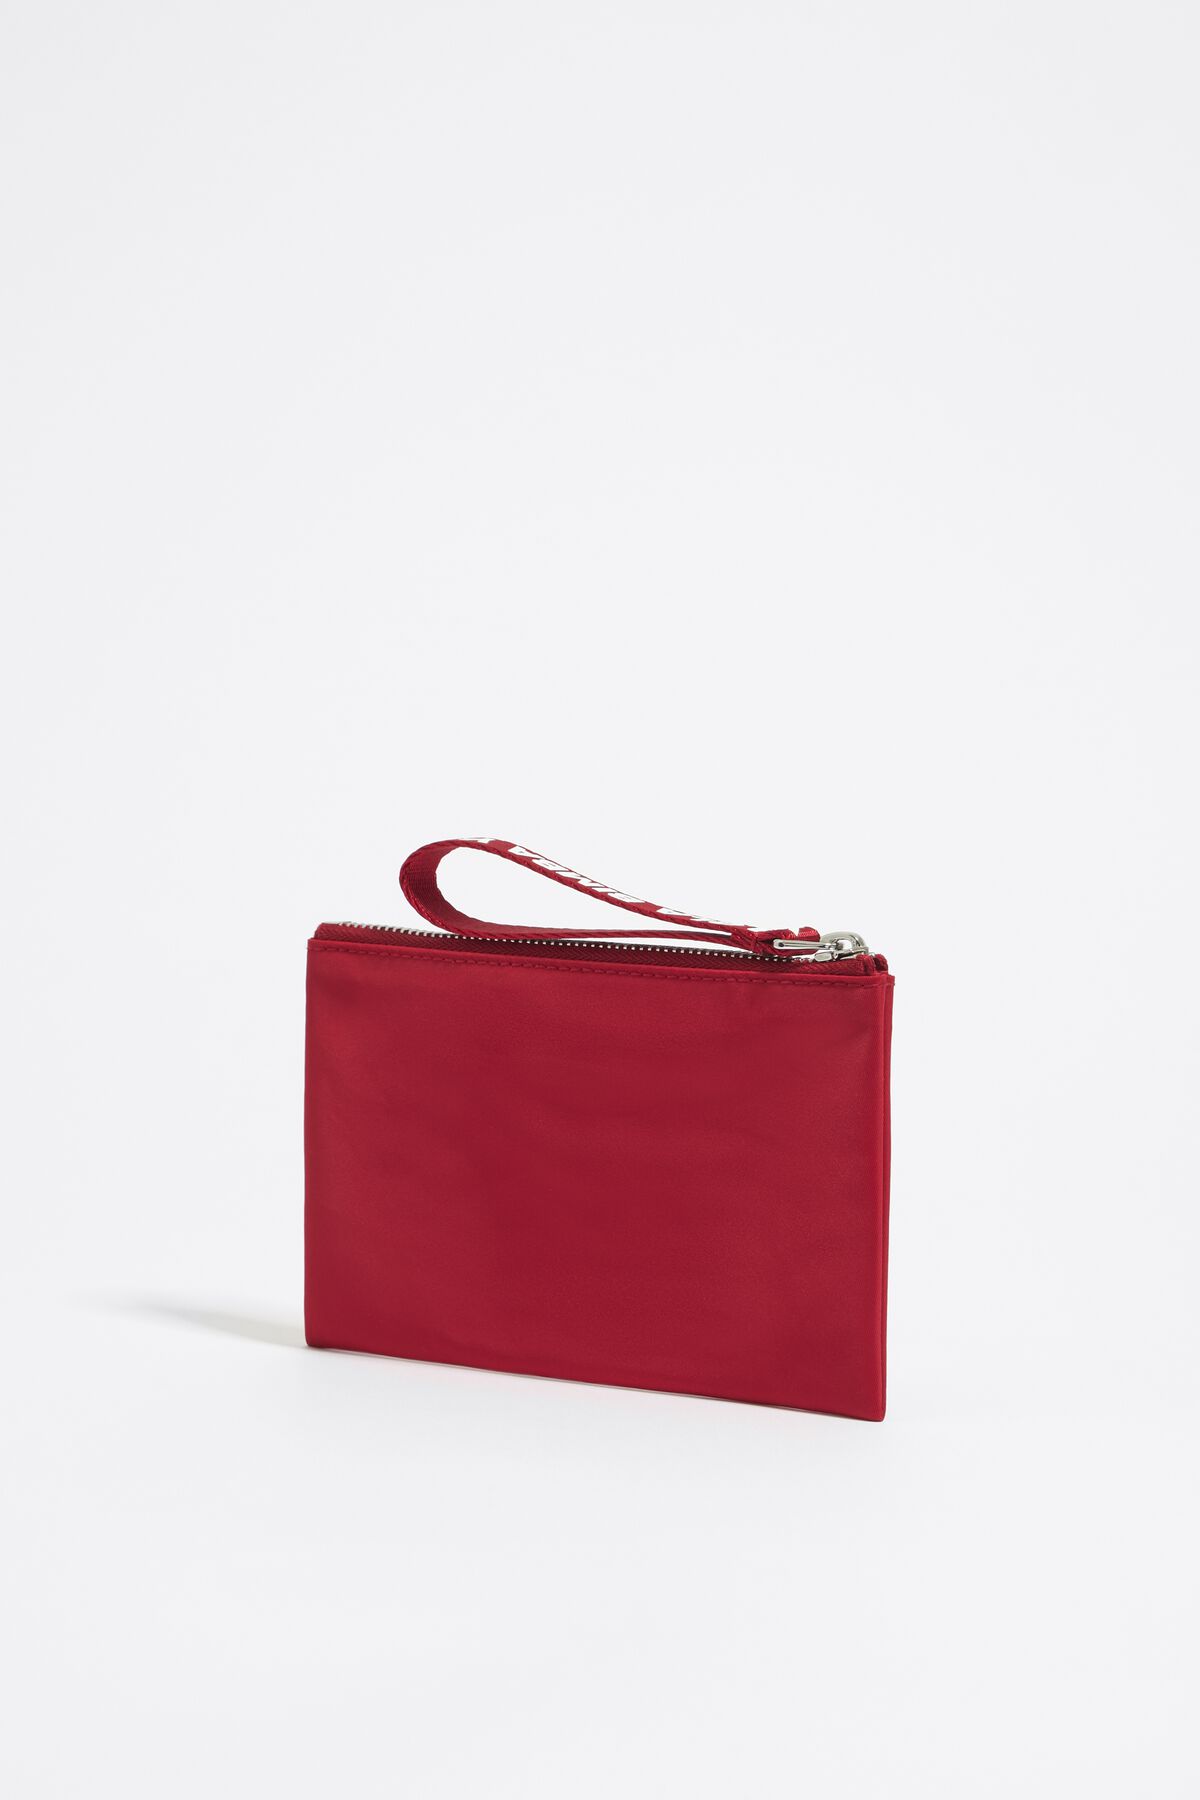 Red, White, Blue Nylon Bag – Design Spectrum